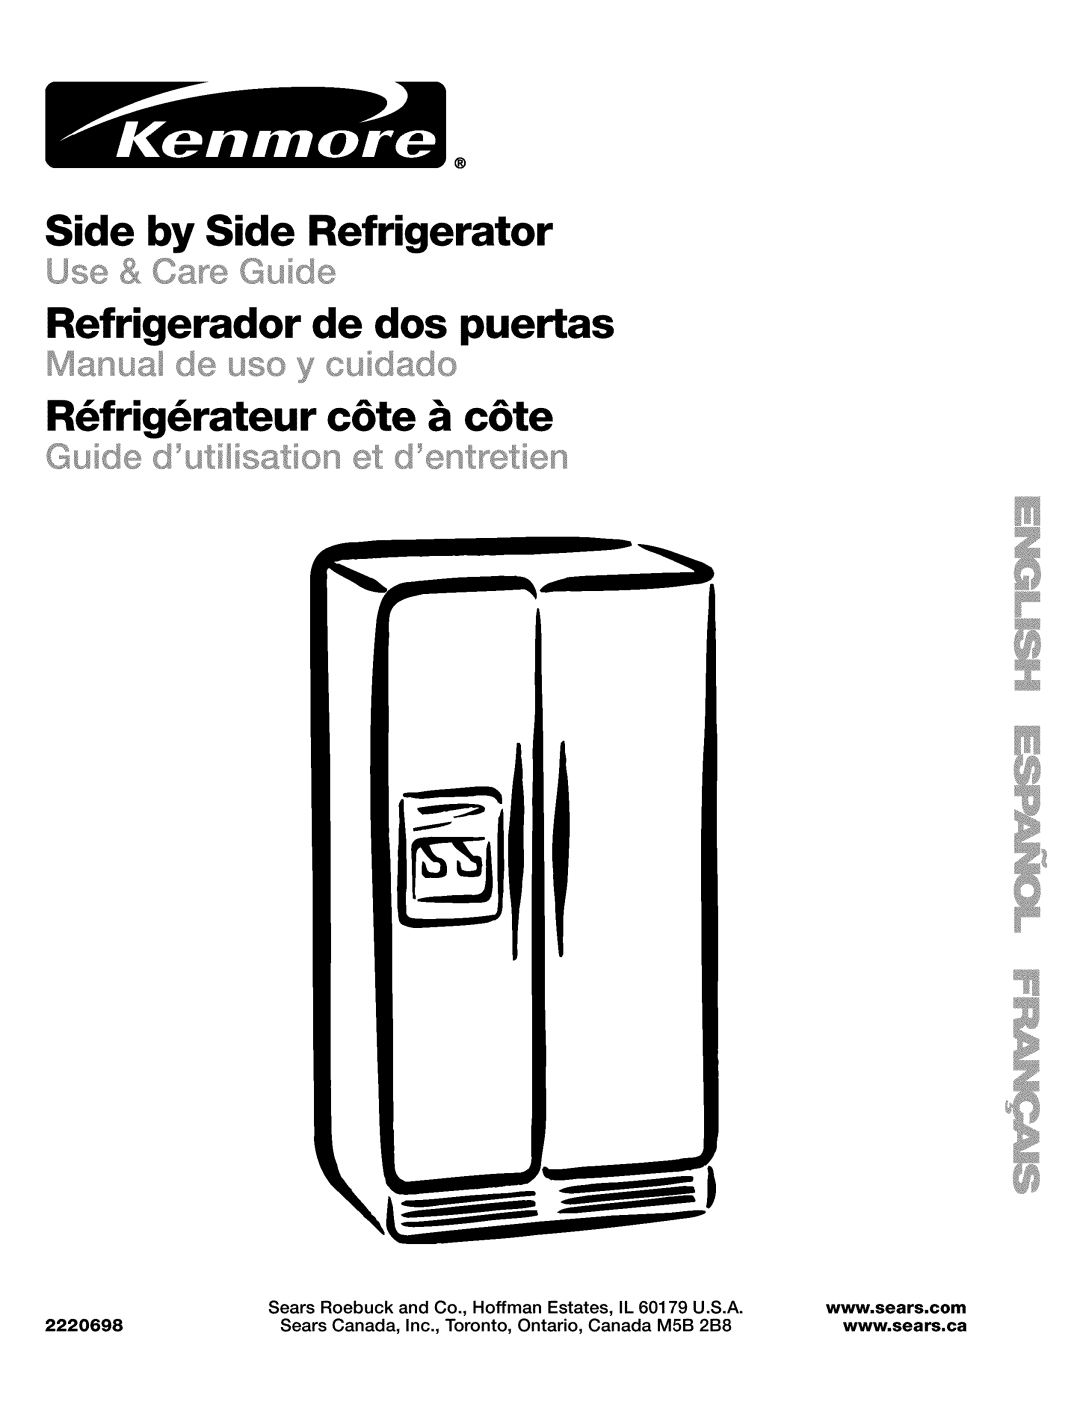 Kenmore 2220698 manual Side by Side Refrigerator, Refrigerador de dos puertas, R6frig6rateur c6te & c6te, Use & OsageGuide 